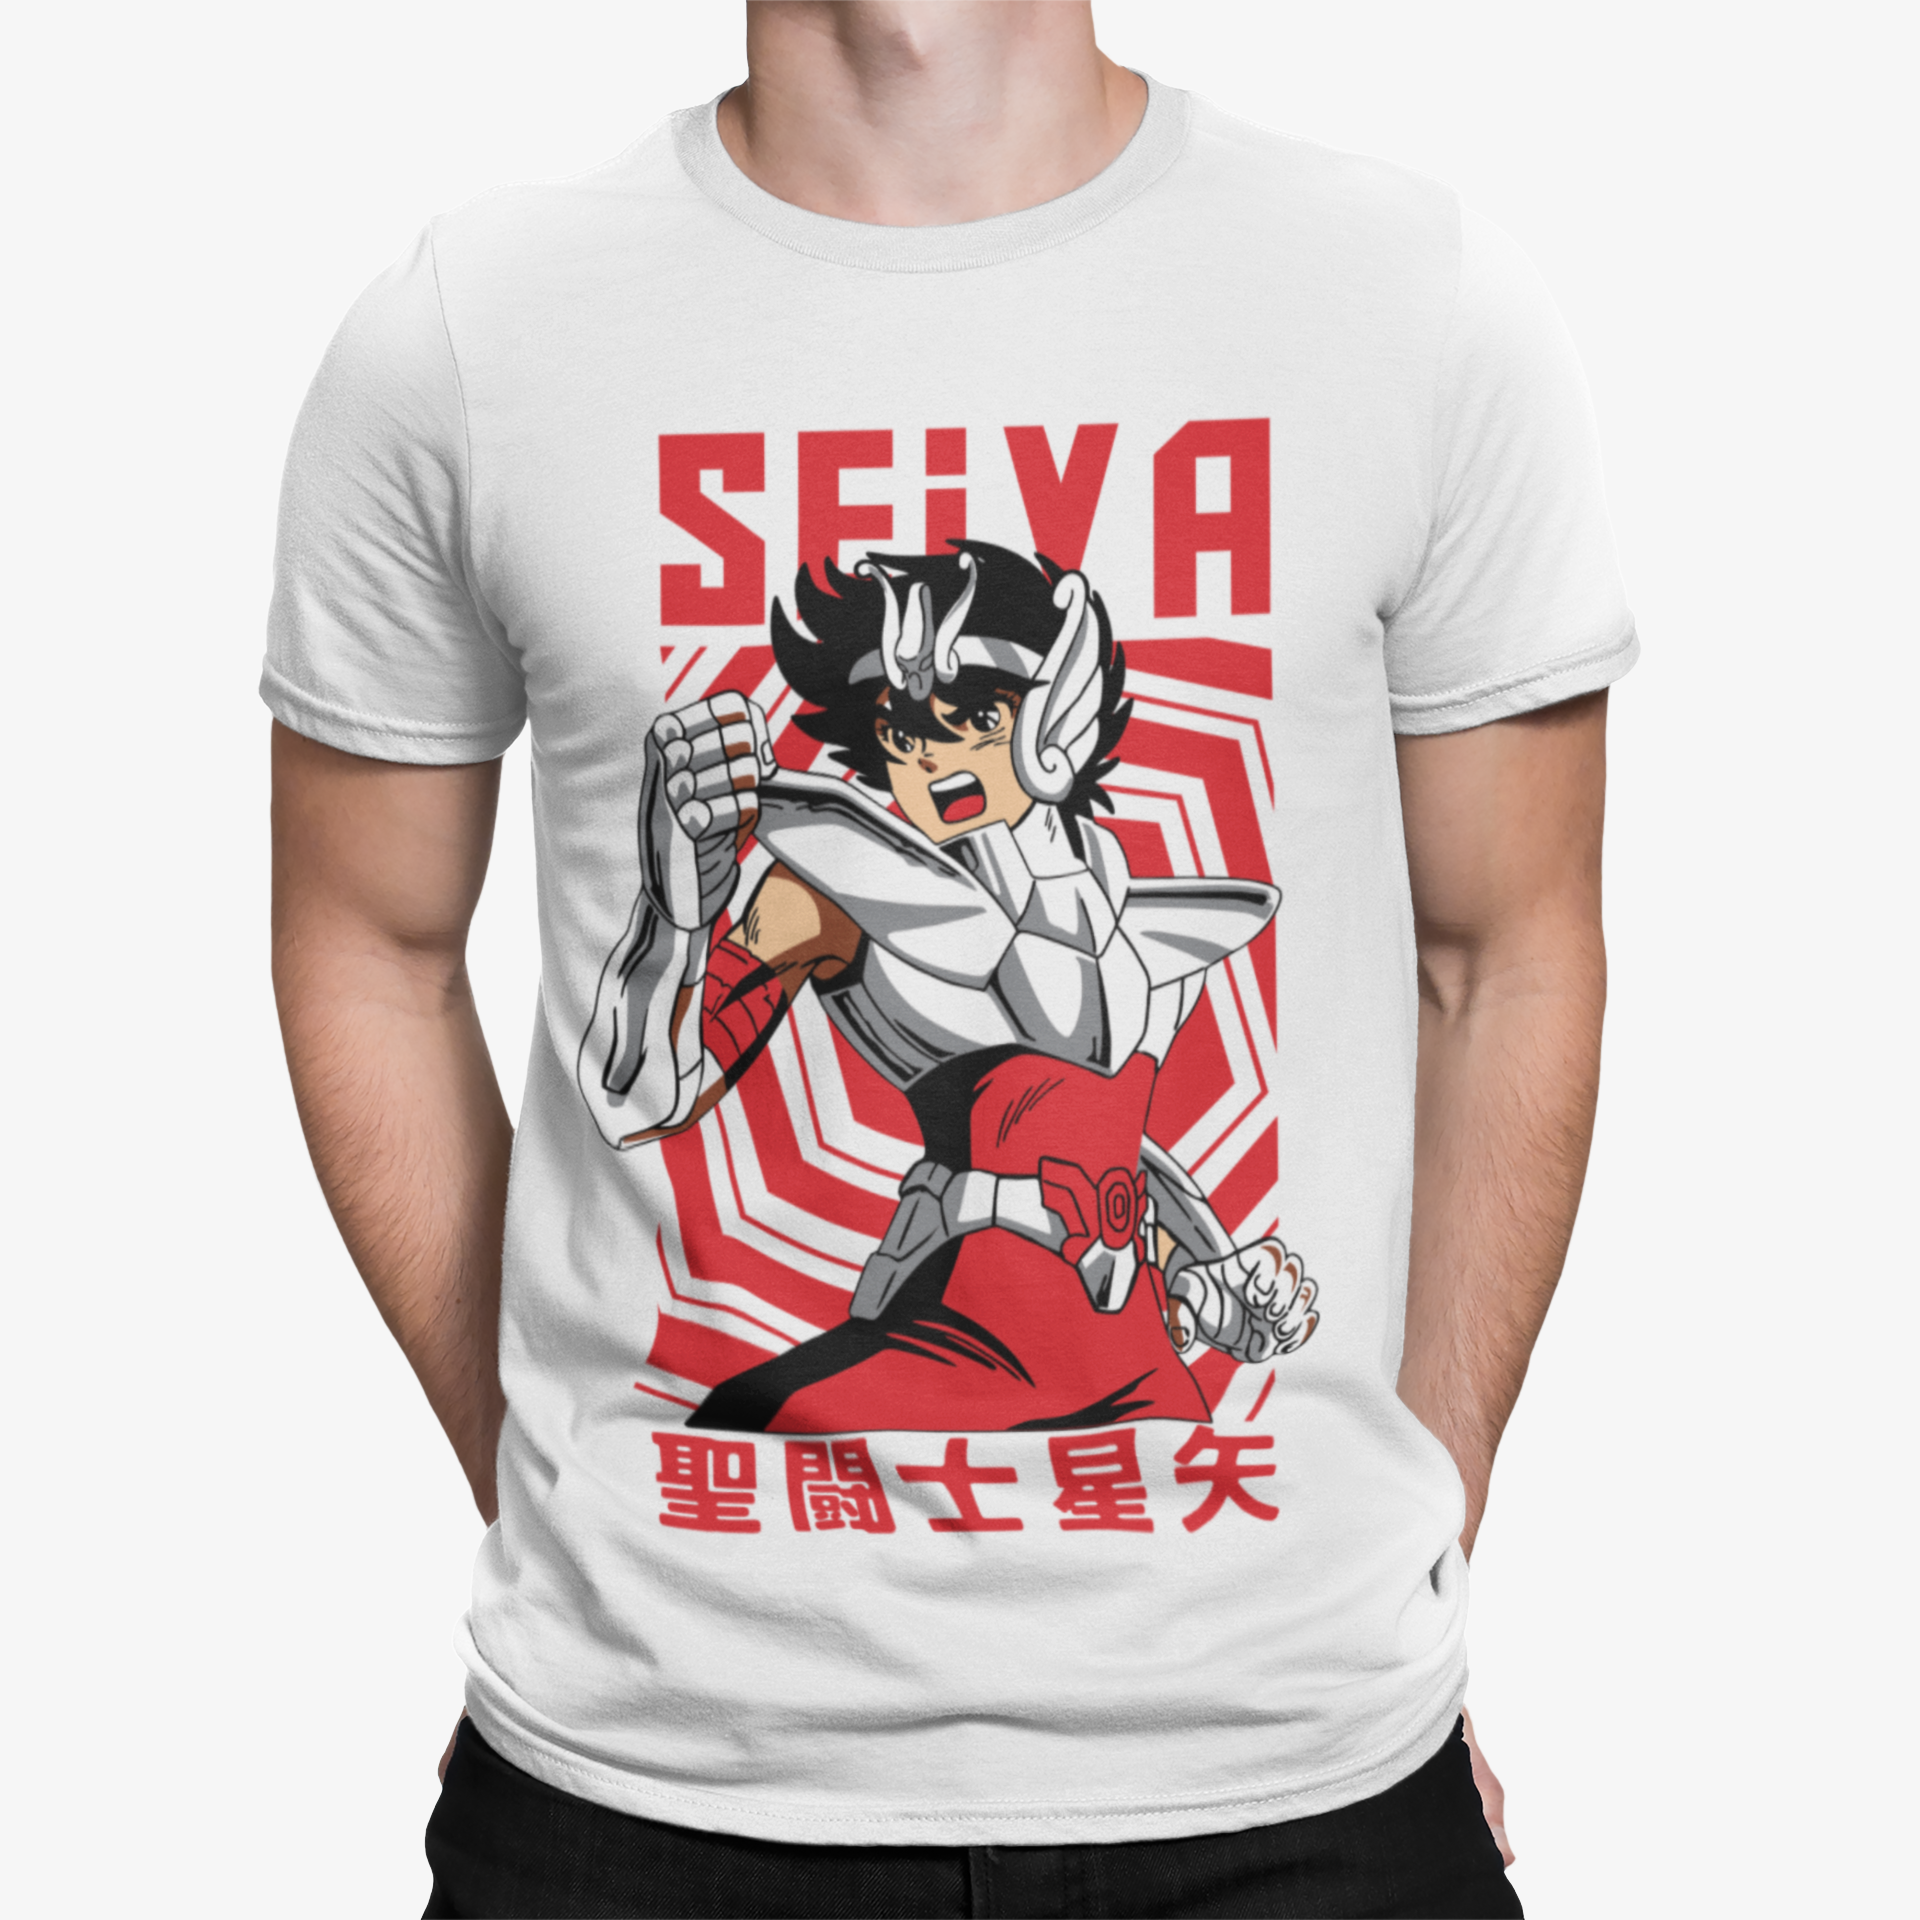 Camiseta Seiva